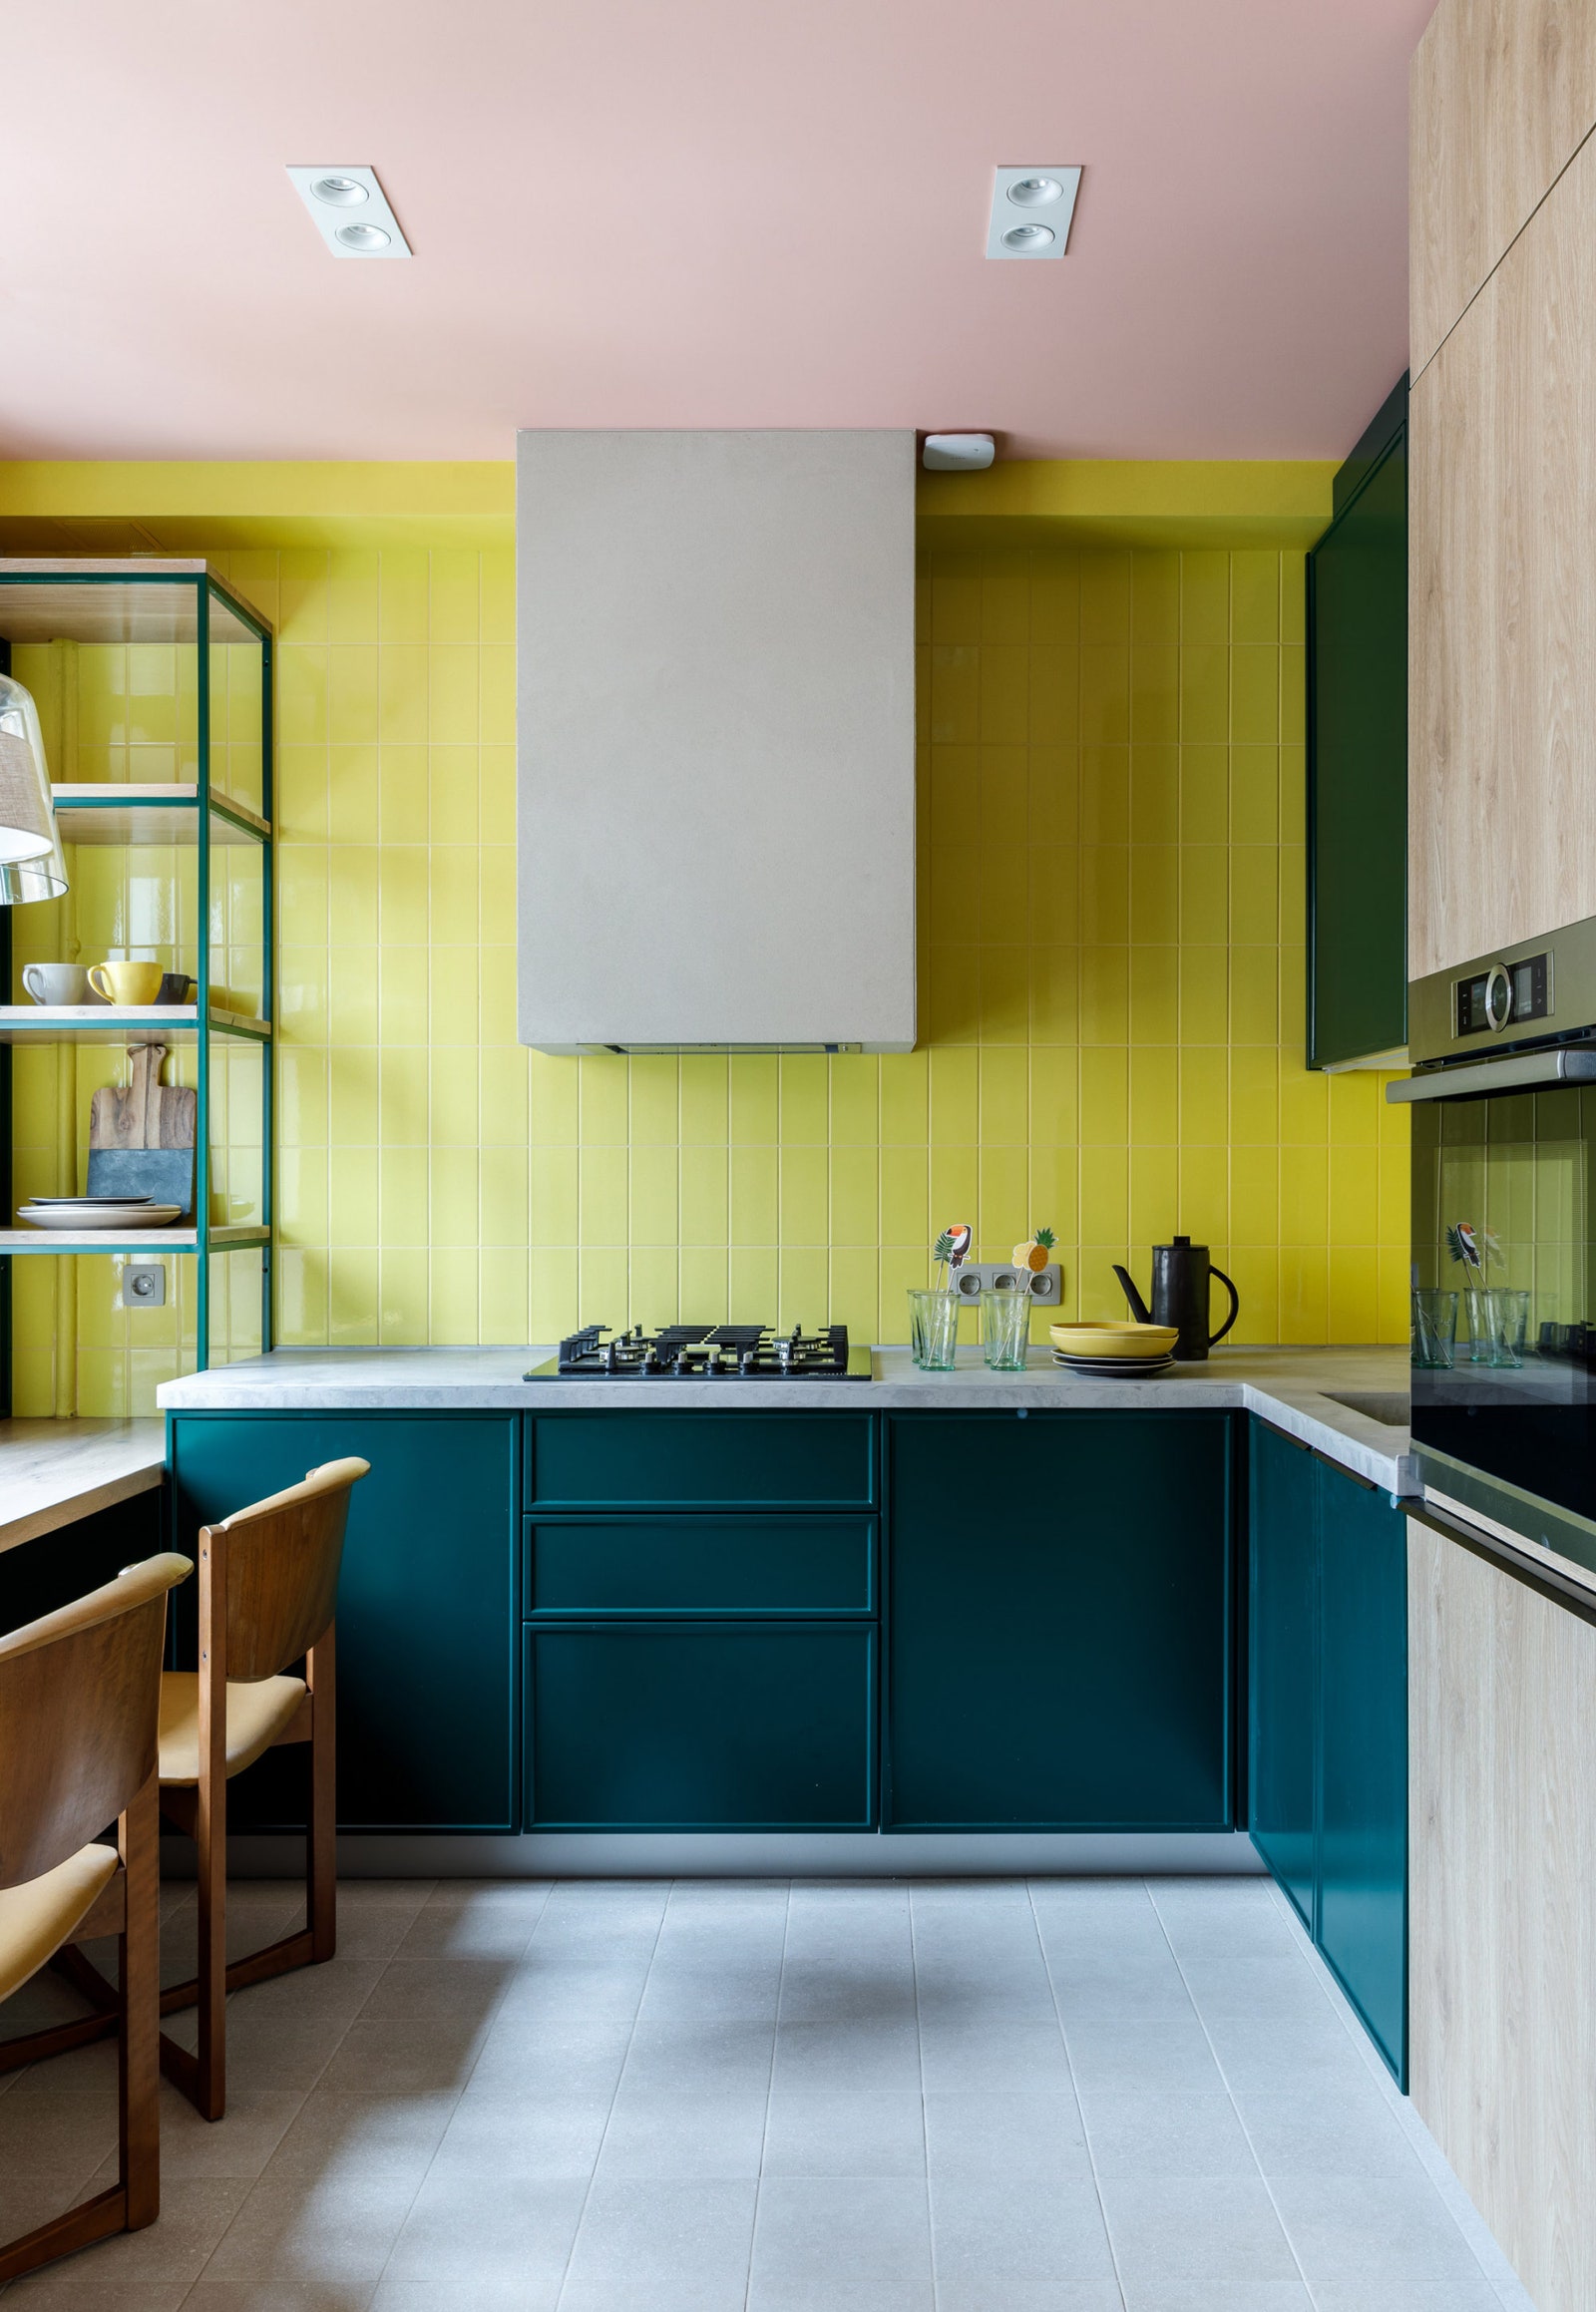 Кухня в проекте Киры Чувелевой. Гарнитур сделан на заказ и выкрашен в изумрудный цвет на полу цементная плитка Equipe...